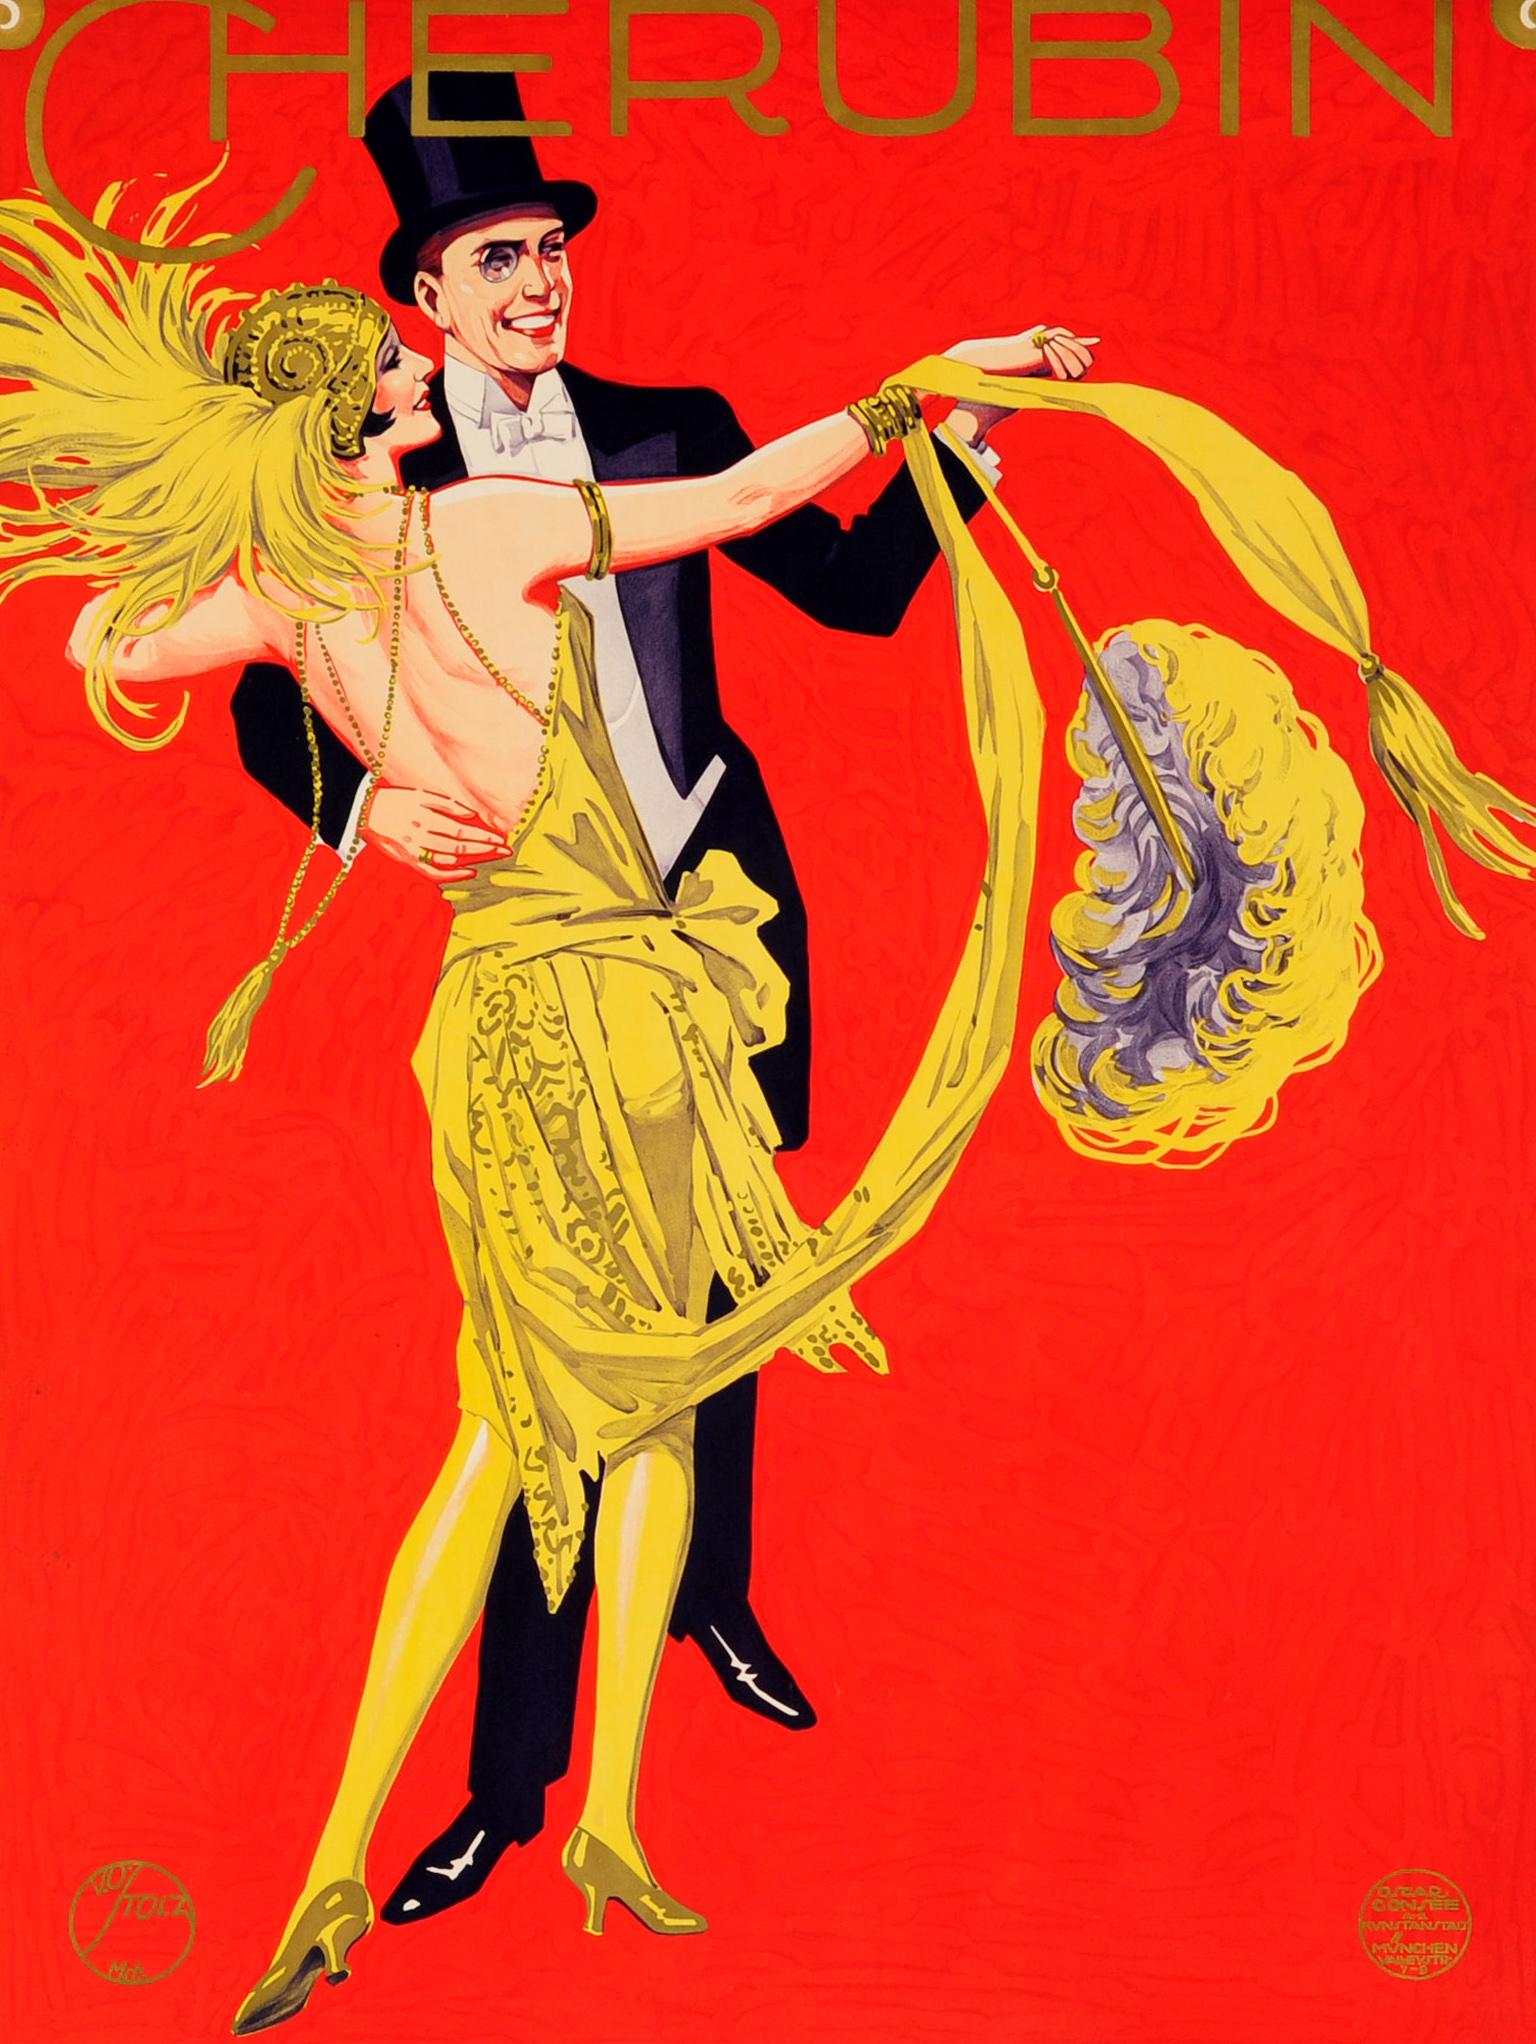 Affiche publicitaire allemande d'époque pour le carnaval de carême Fasching de Munich qui se tiendra à Eleg les 7 et 8 janvier 1928. L'illustration colorée de Viktor Otto Stolz (1874-1955) représente un couple souriant dansant sur un fond rouge,